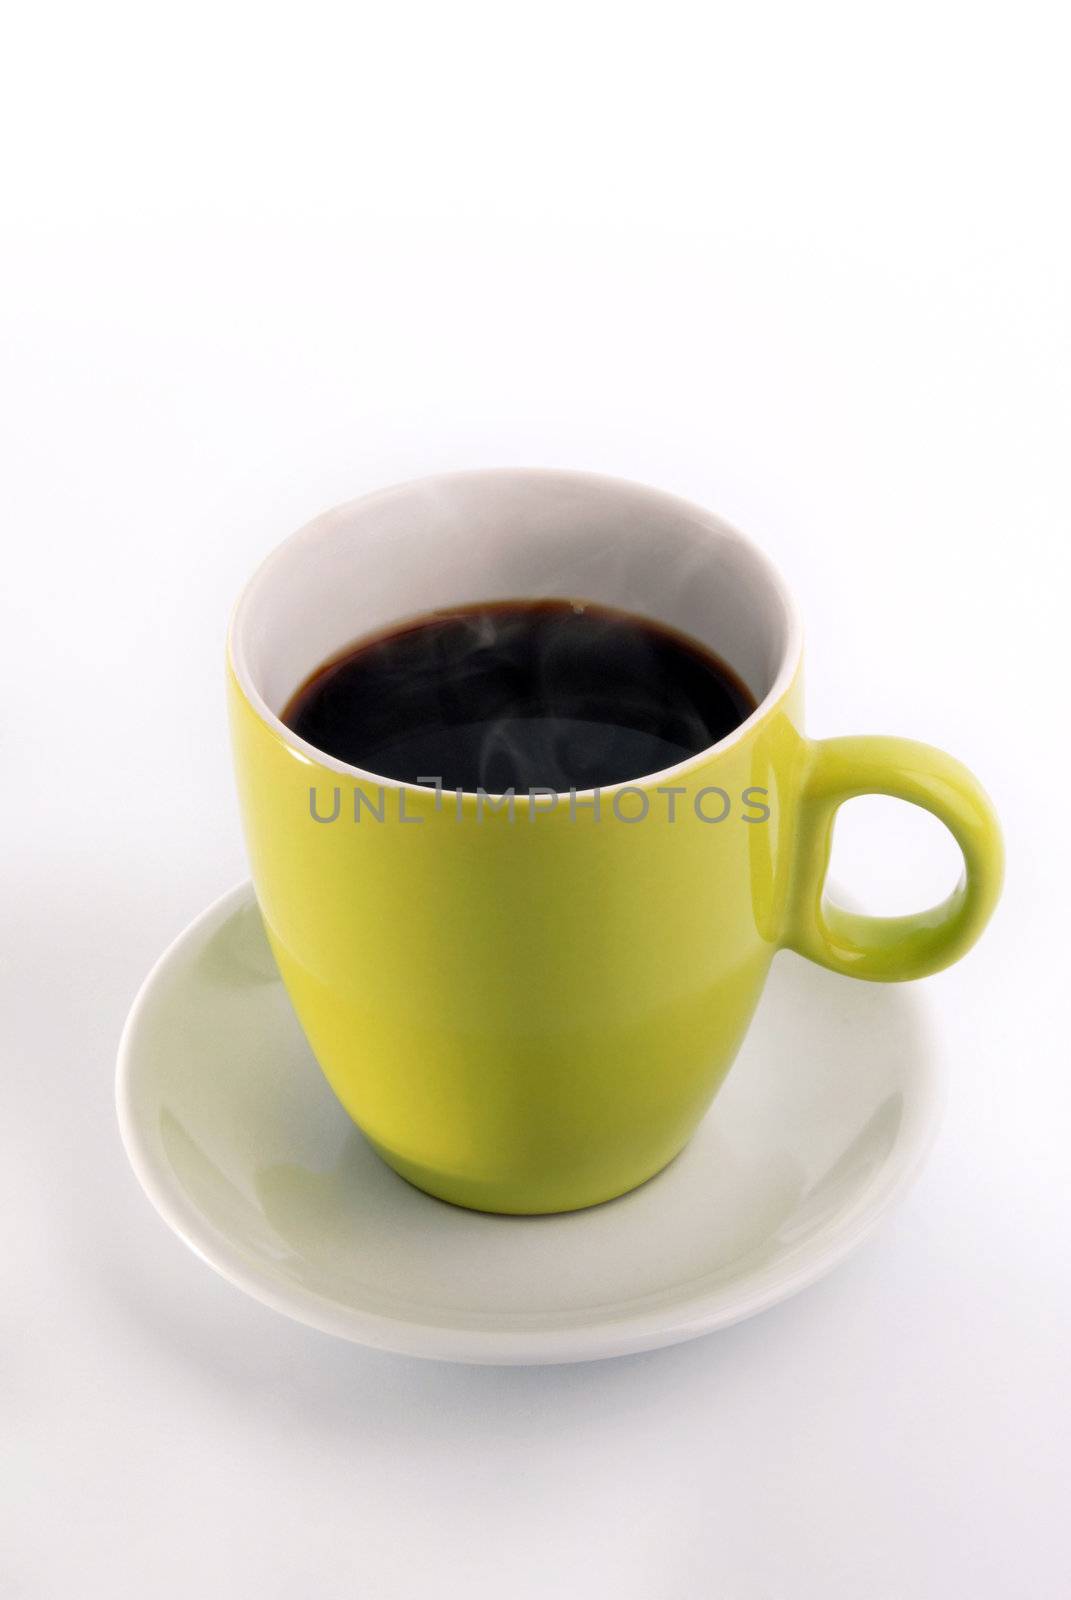 Coffee mug by cienpies